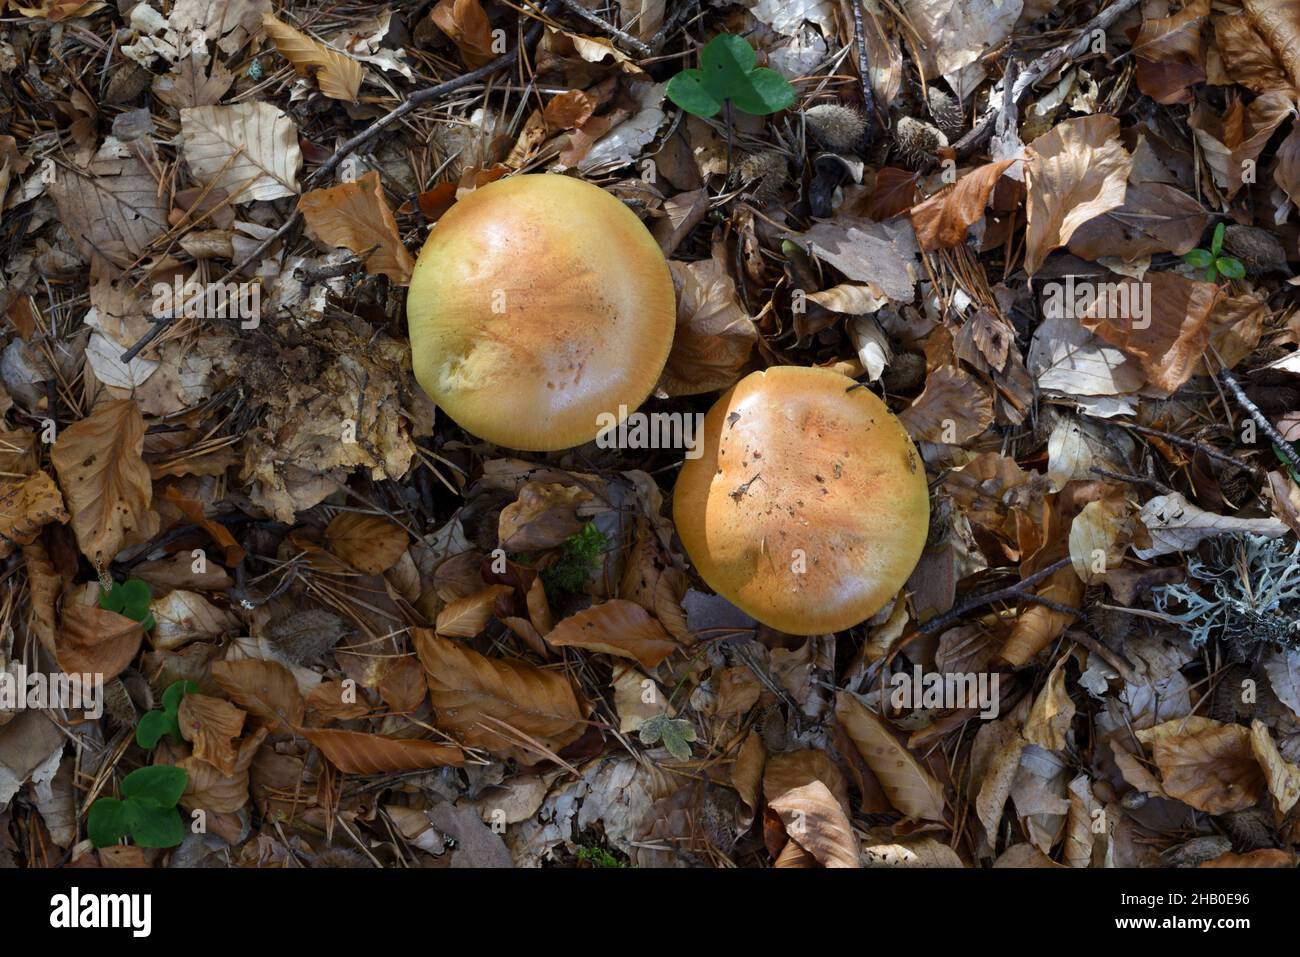 Pair or Two Bitter Bolete Mushrooms, Tylopilus felleus, aka Bitter tylopilus, Growing among Dead Leaves or Leaf Litter on Forest Floor Stock Photo